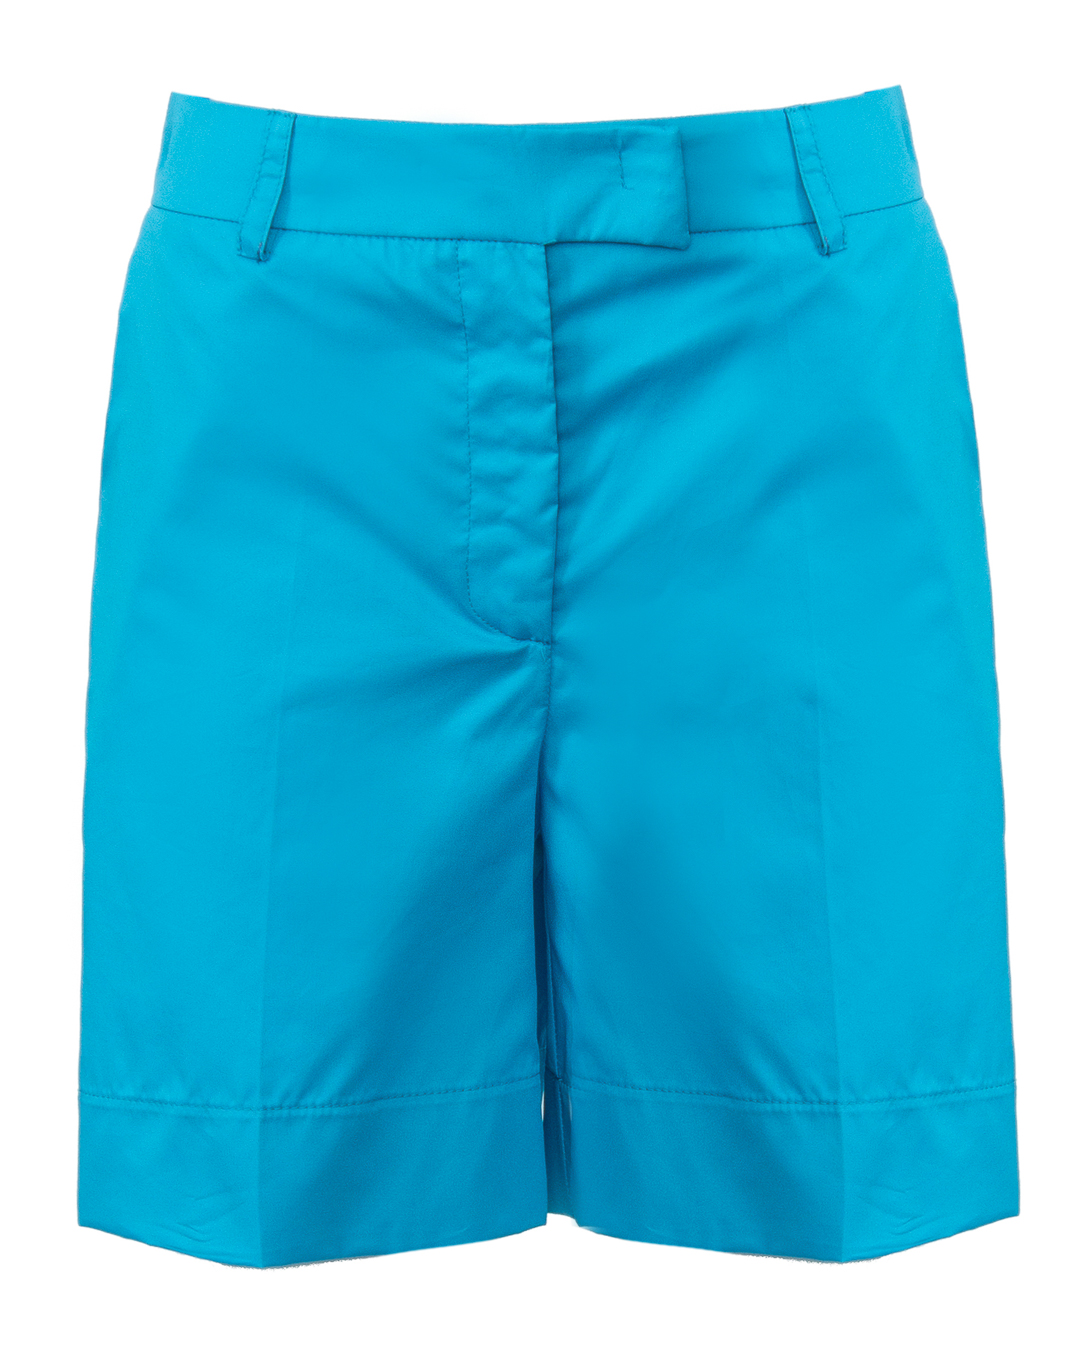 шорты ICONA BY KAOS OP5MR012 голубой 42, размер 42